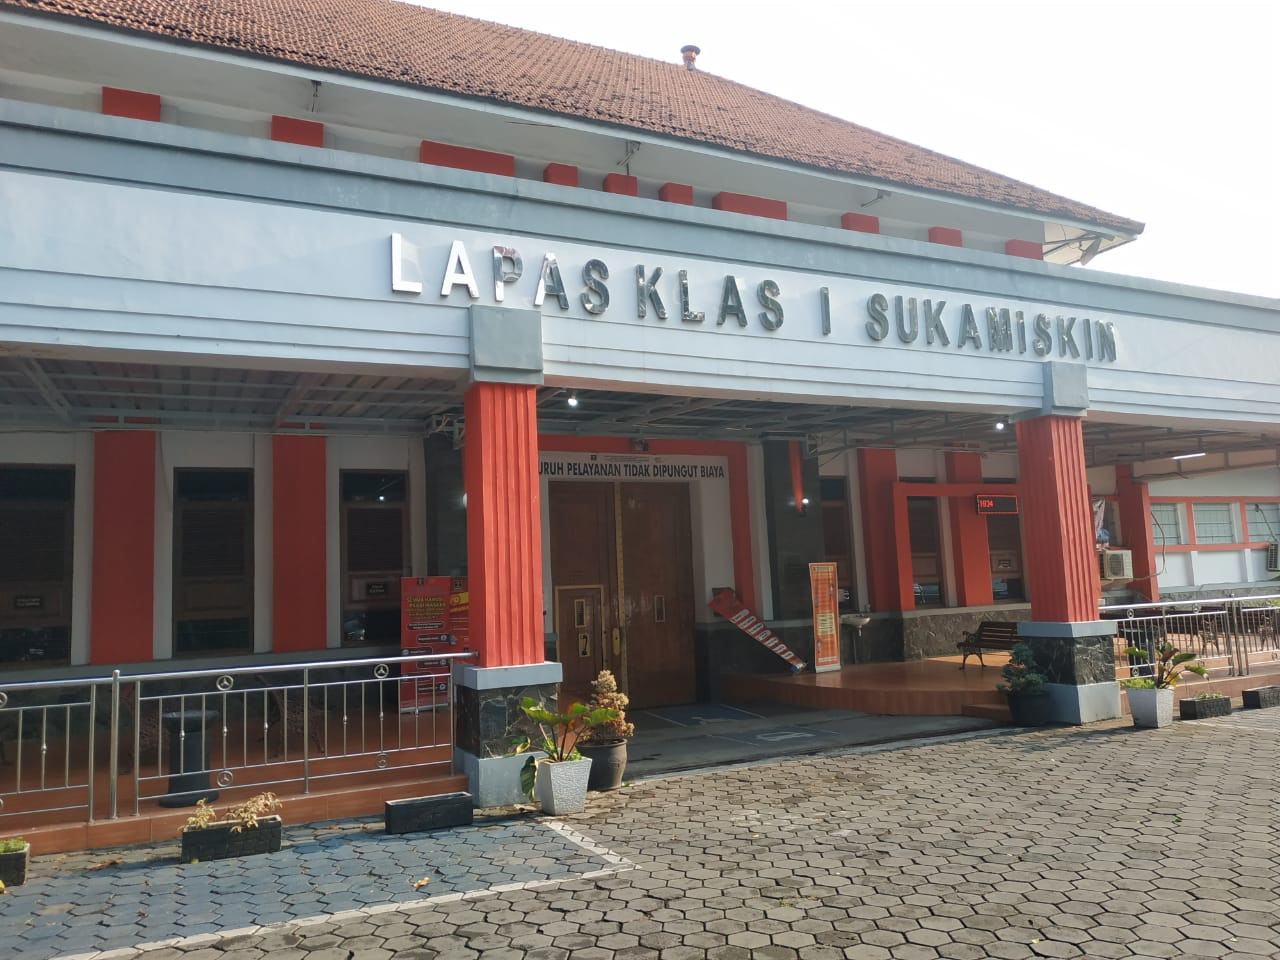 Eks Ketua DPR RI Amin Santono Bebas Bersyarat dari Lapas Sukamiskin Bandung - JPNN.com Jabar